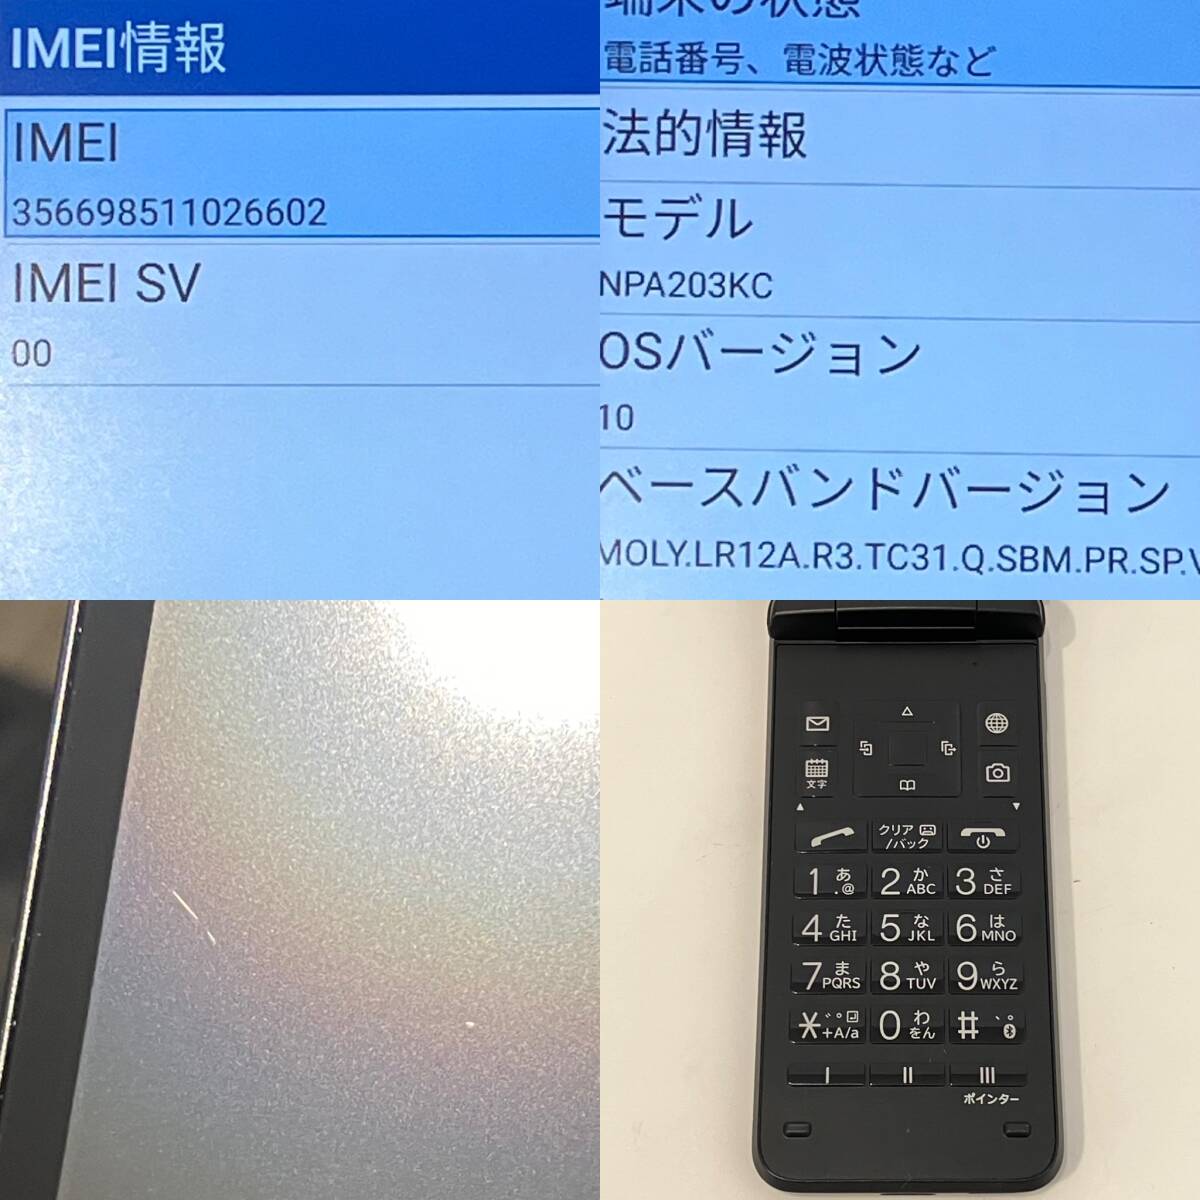 [ б/у ]SIM свободный Kyocera DIGNO мобильный телефон 4 A203KC черный ограничение использования 0 складной gala ho Y!mobile версия 